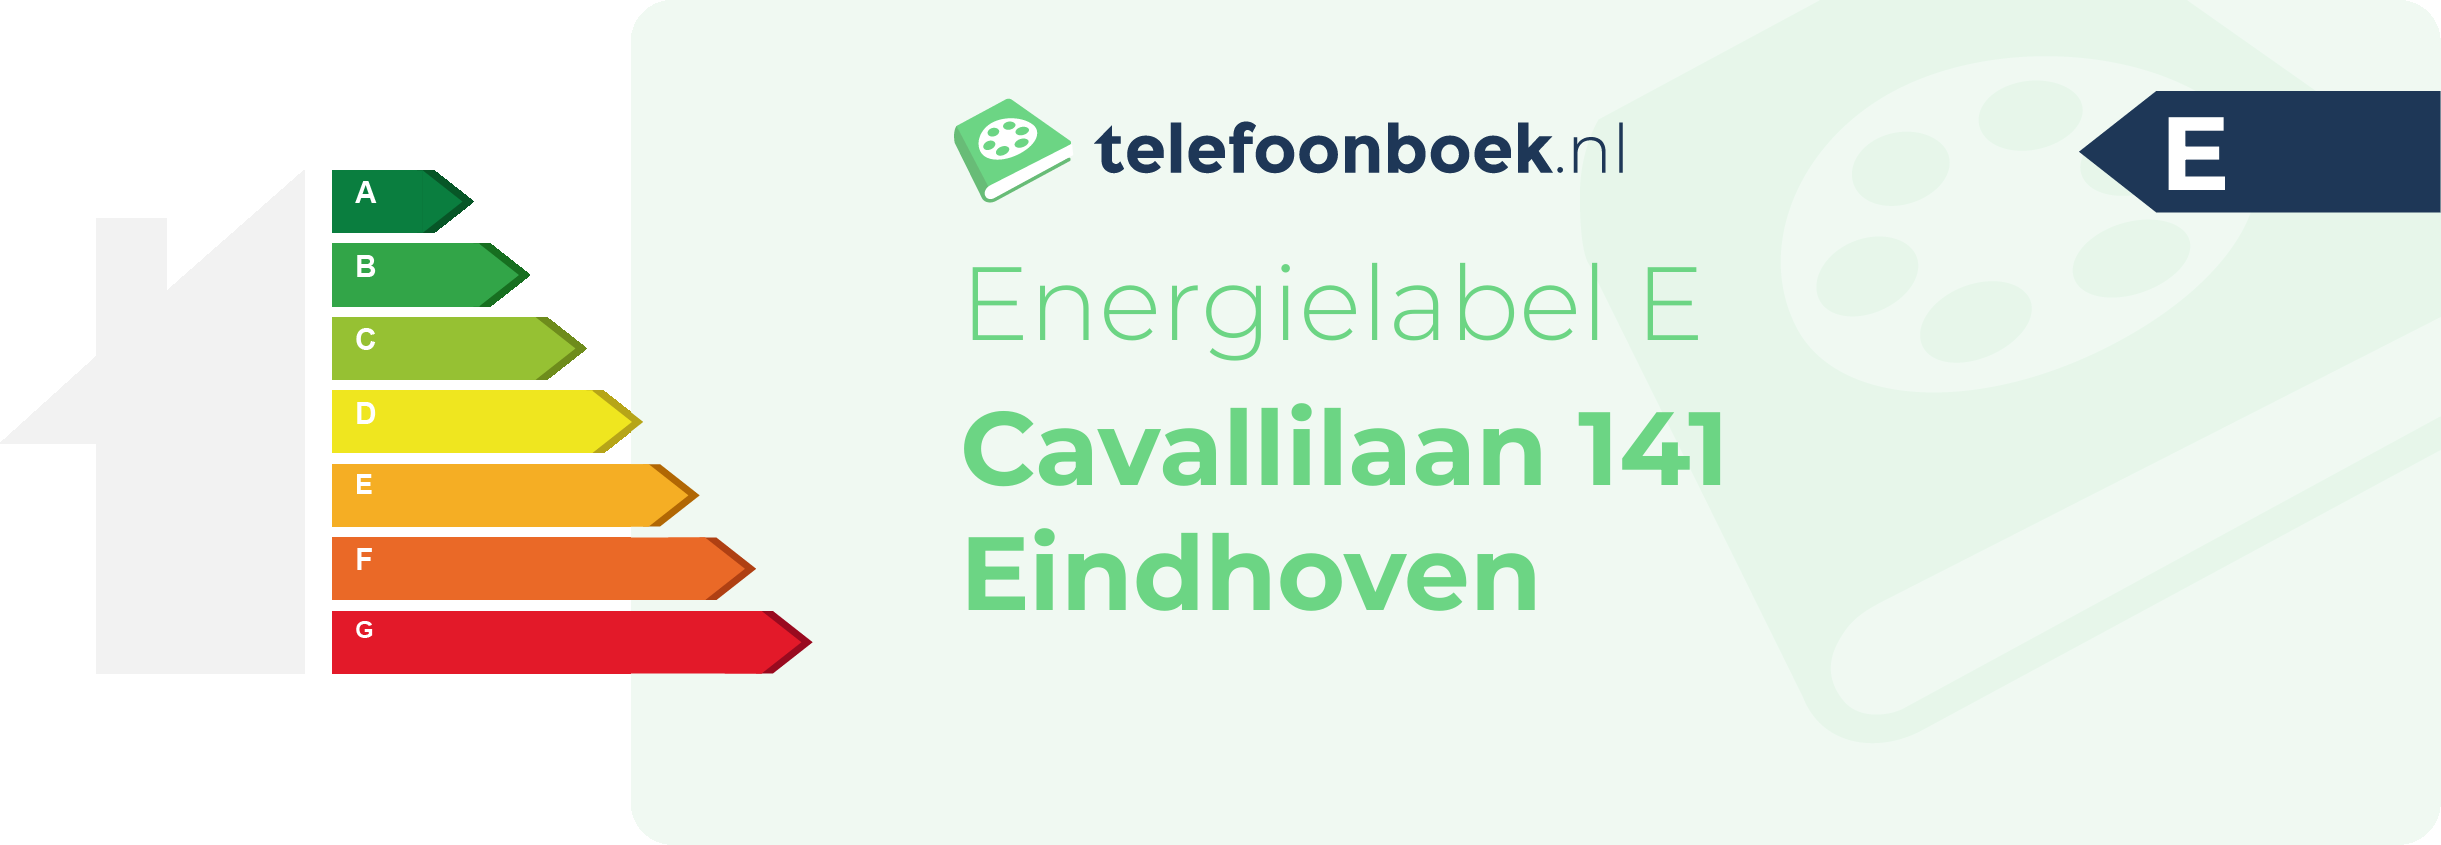 Energielabel Cavallilaan 141 Eindhoven